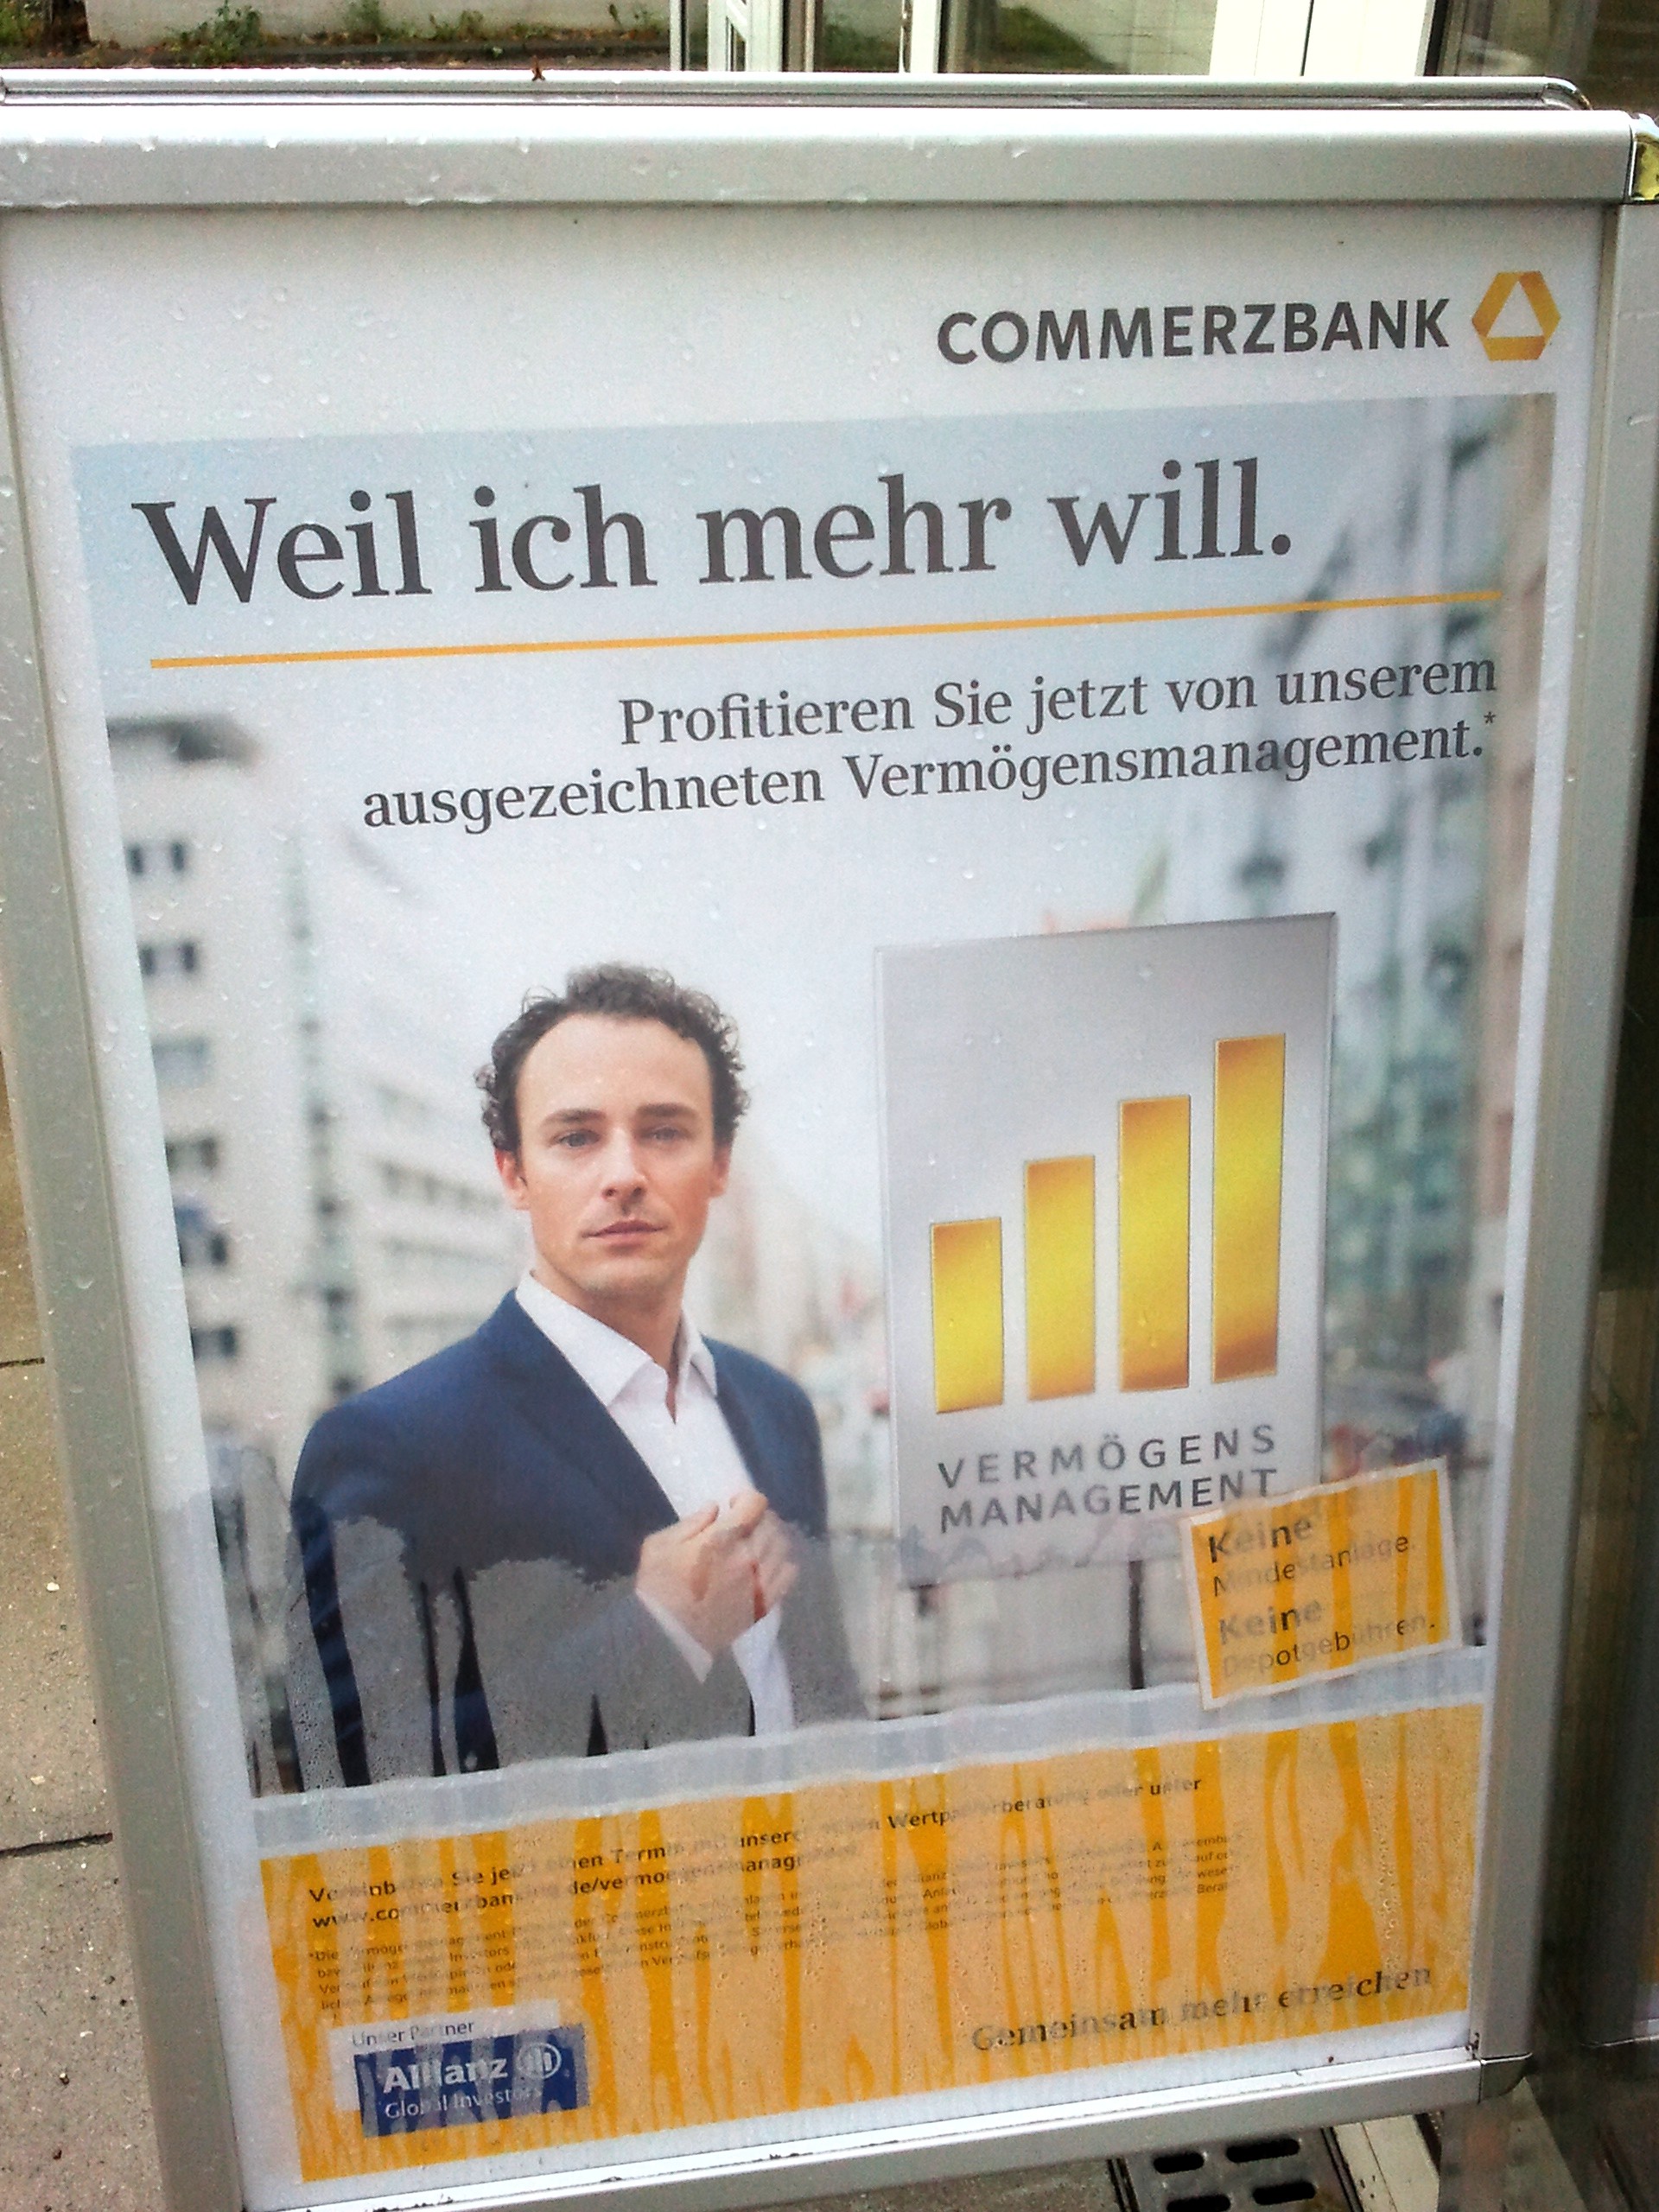 commerzbank - ich will mehr 1 20111029 1378308285